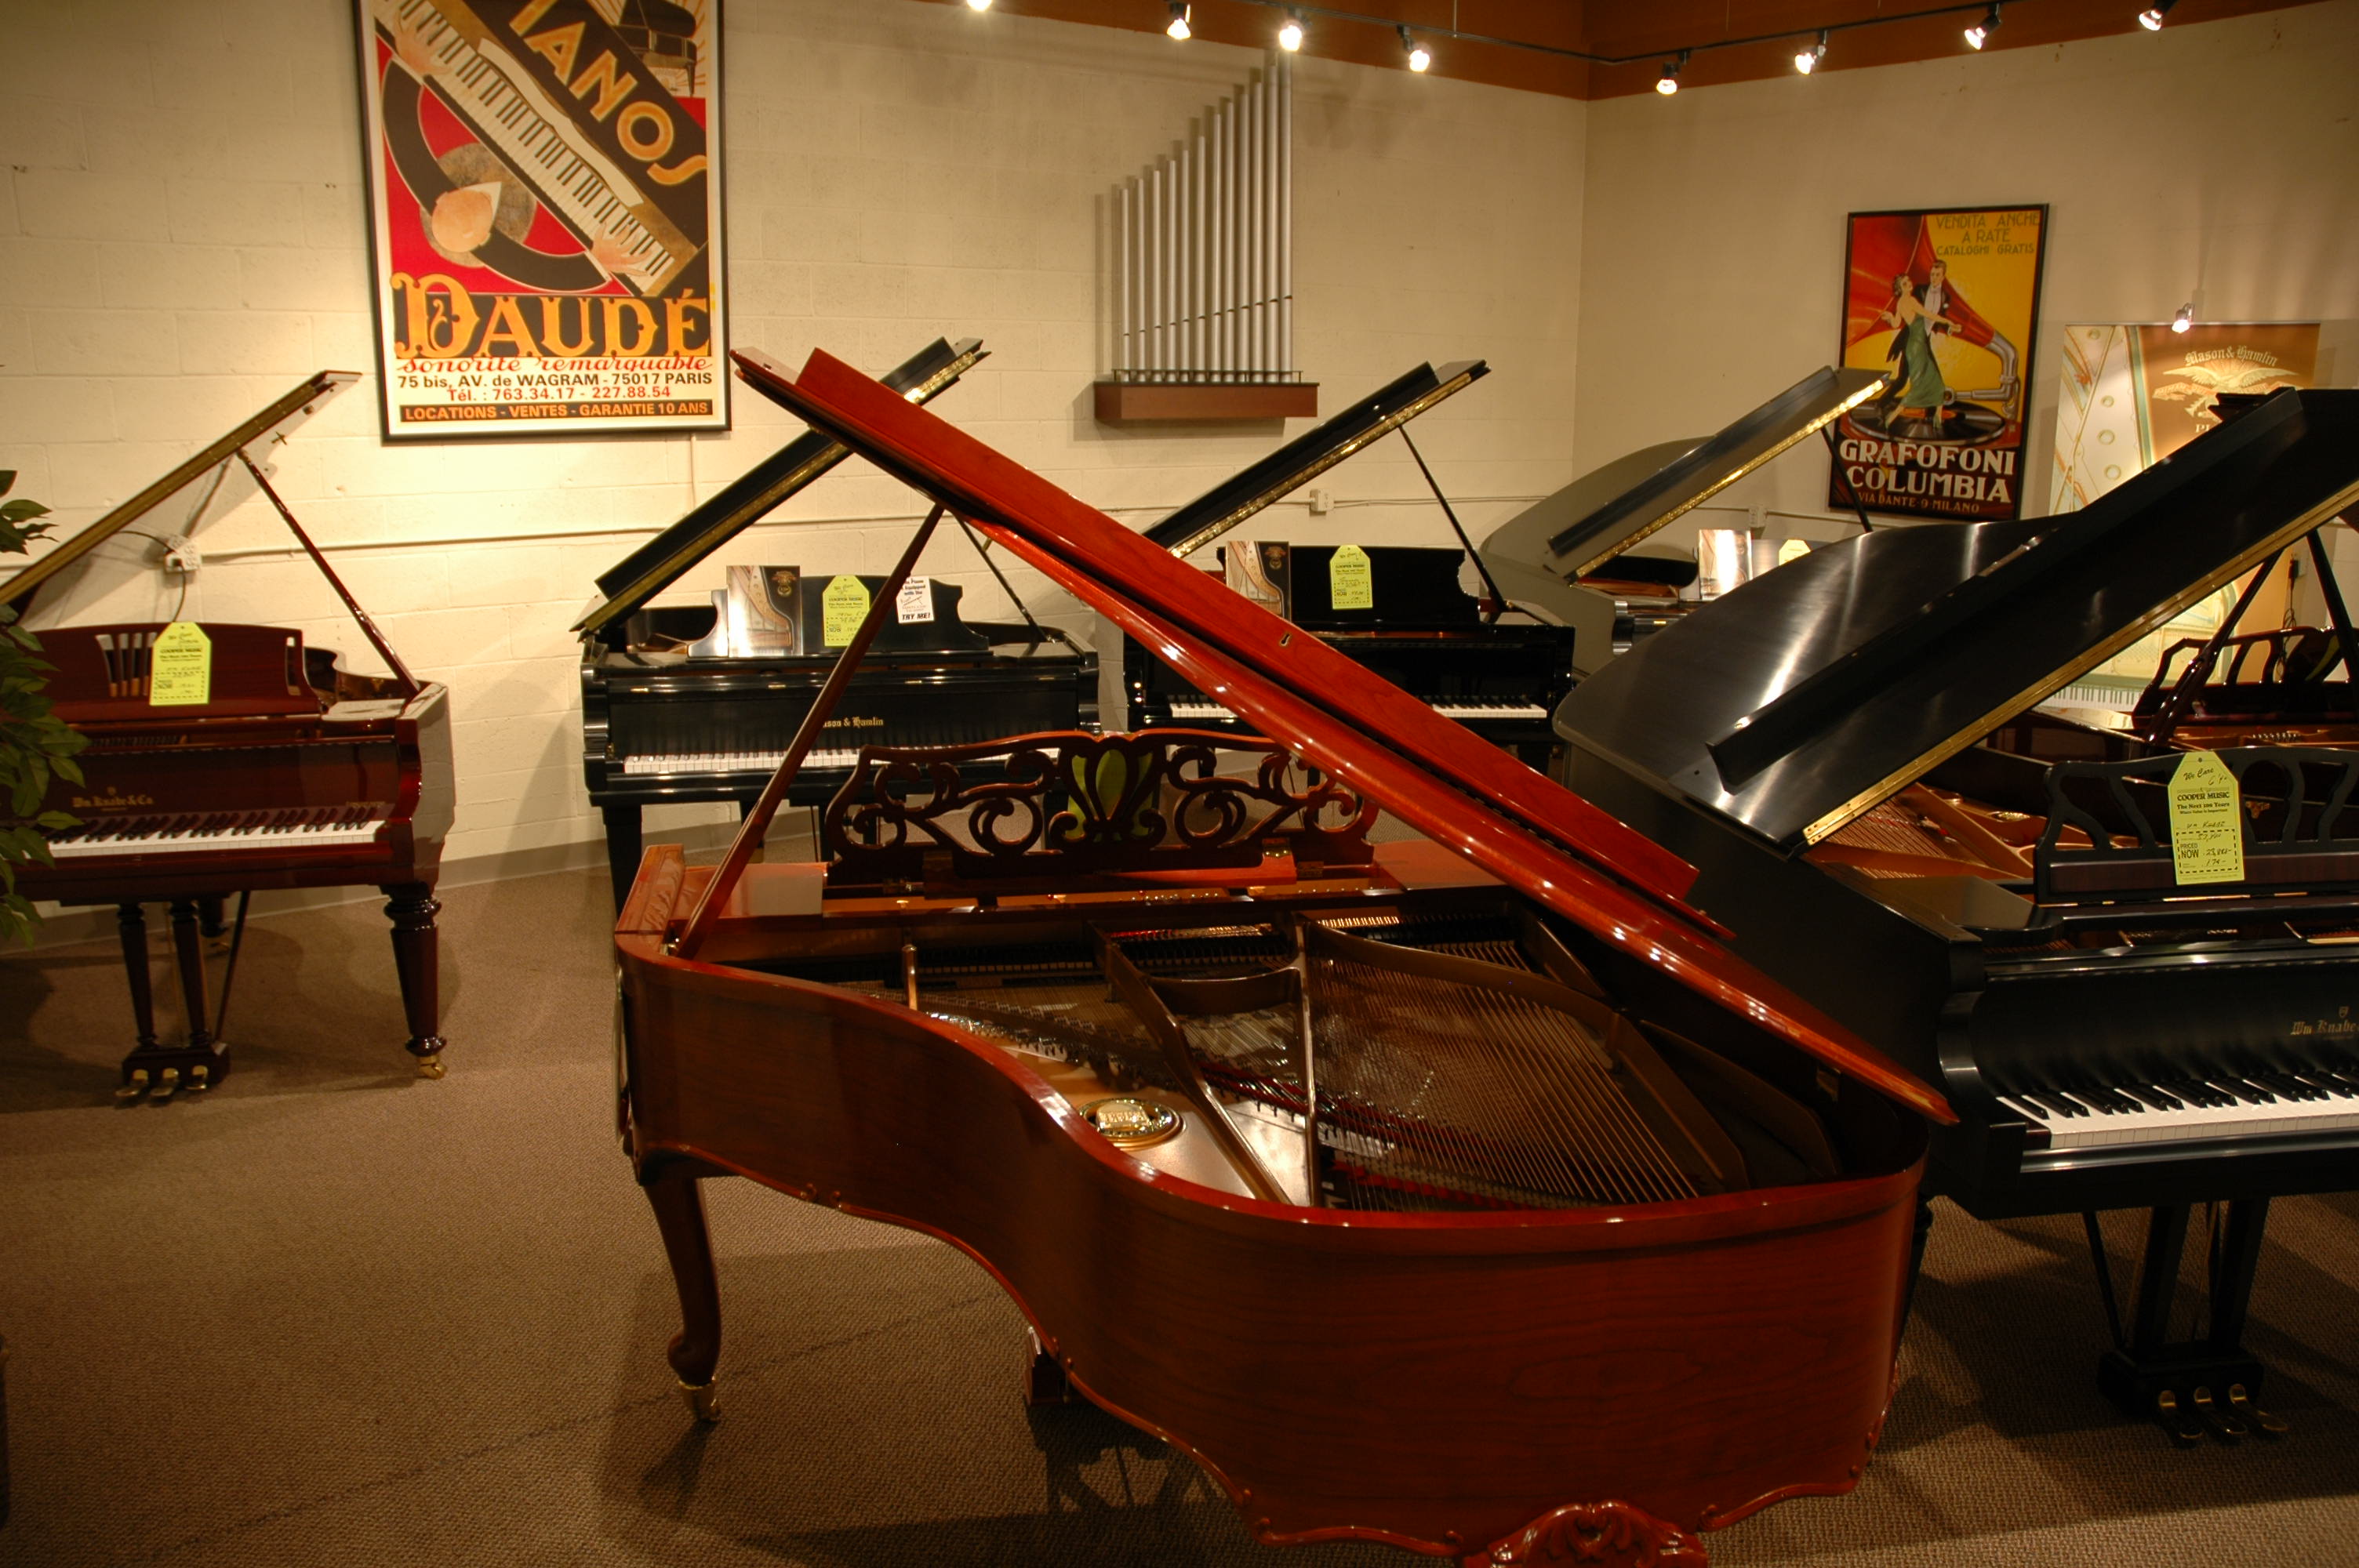 yamaha pianos